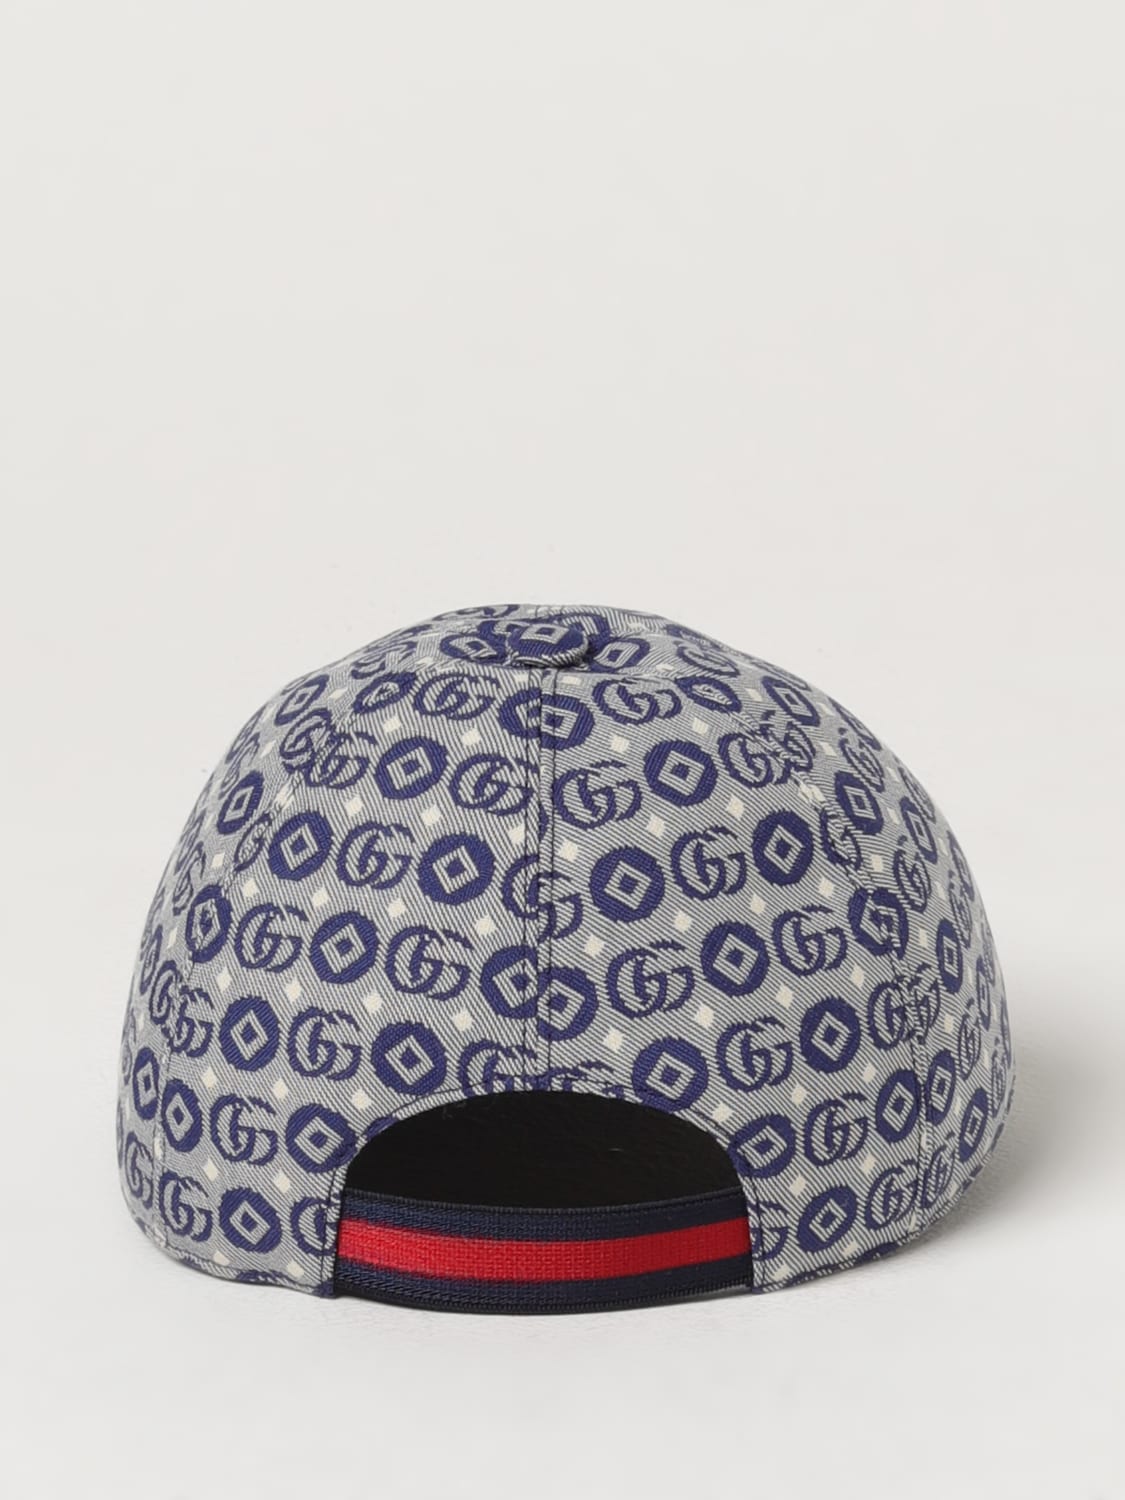 GUCCI： 帽子儿童- 皇家蓝| Gucci 帽子4817743HAQA 在线就在GIGLIO.COM